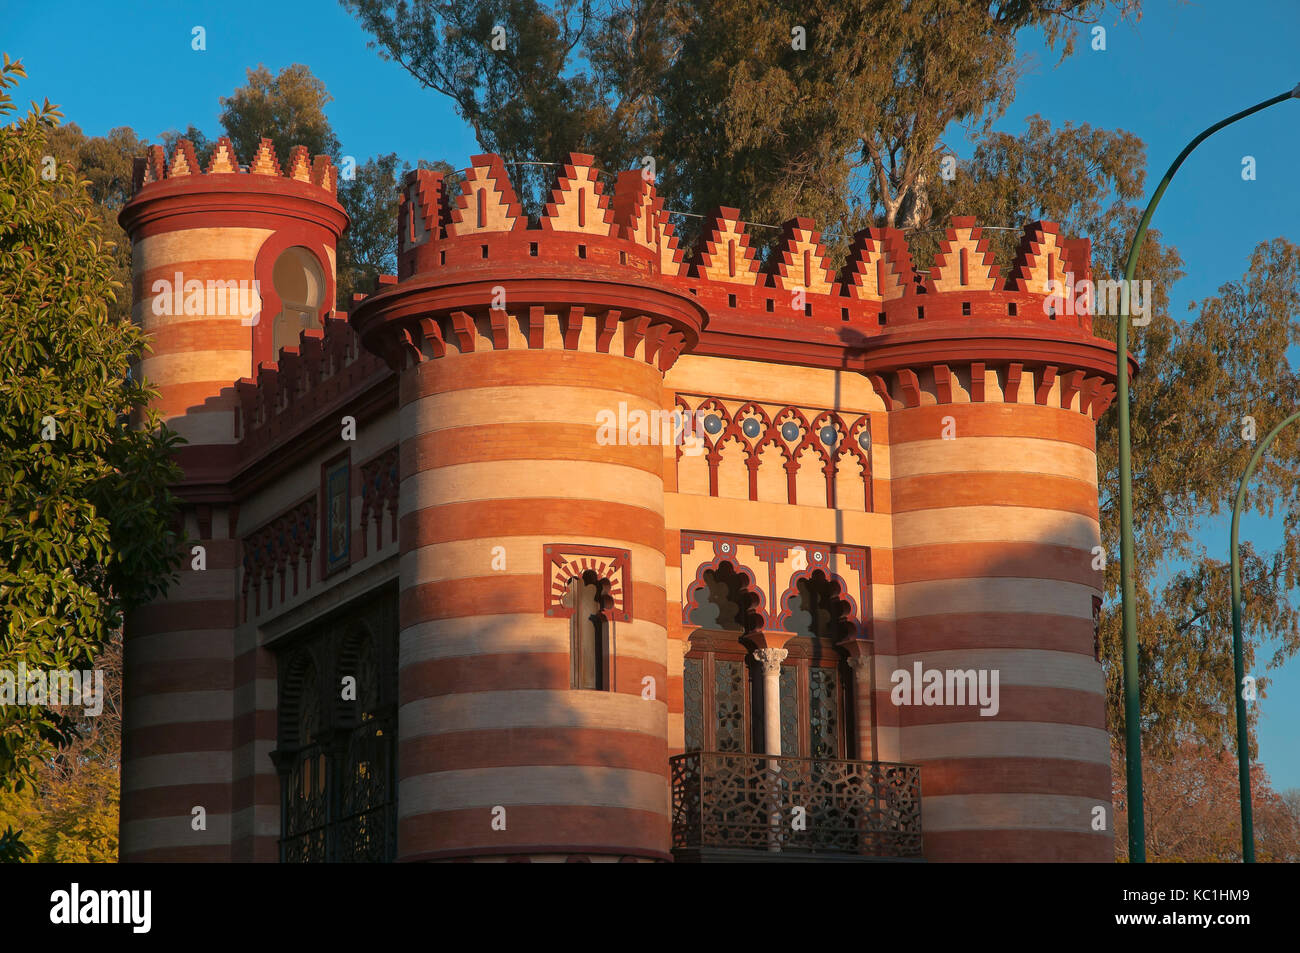 Städtische Amt für Tourismus - Gebäude namens "Costurero de la Reina", Sevilla, Andalusien, Spanien, Europa Stockfoto